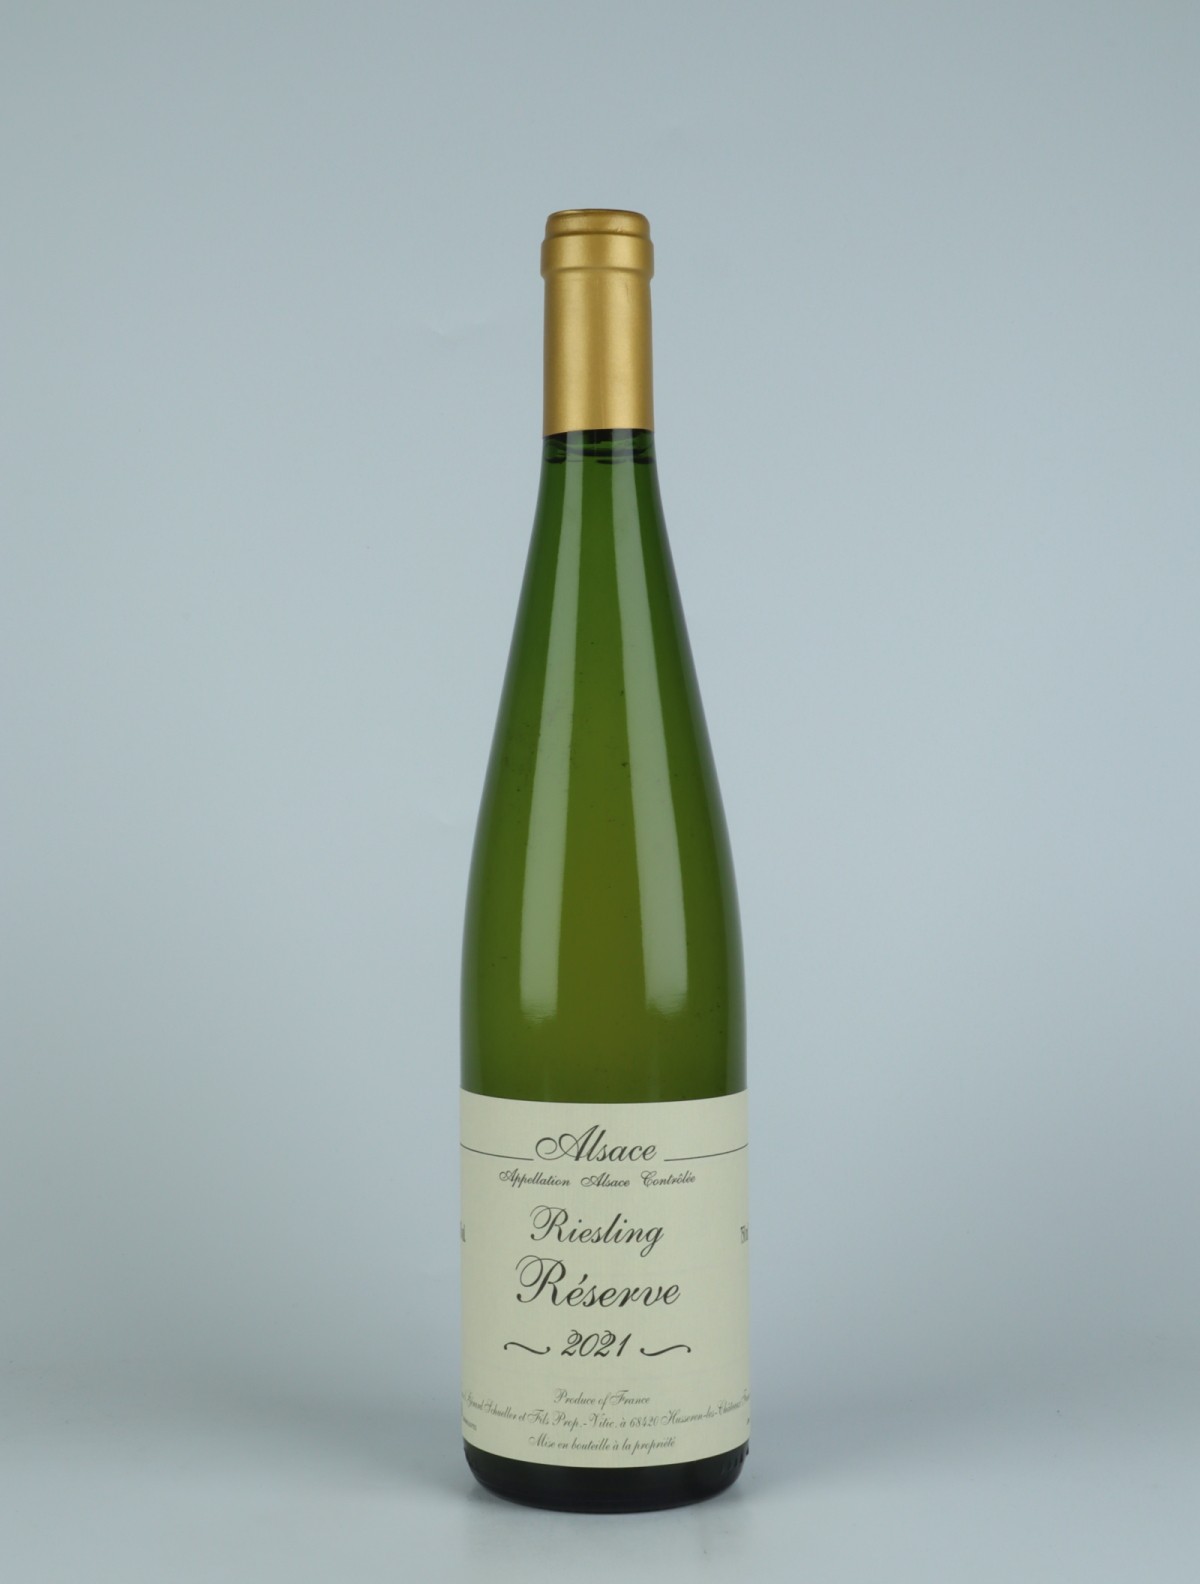 En flaske 2021 Riesling - Réserve Hvidvin fra Gérard Schueller, Alsace i Frankrig